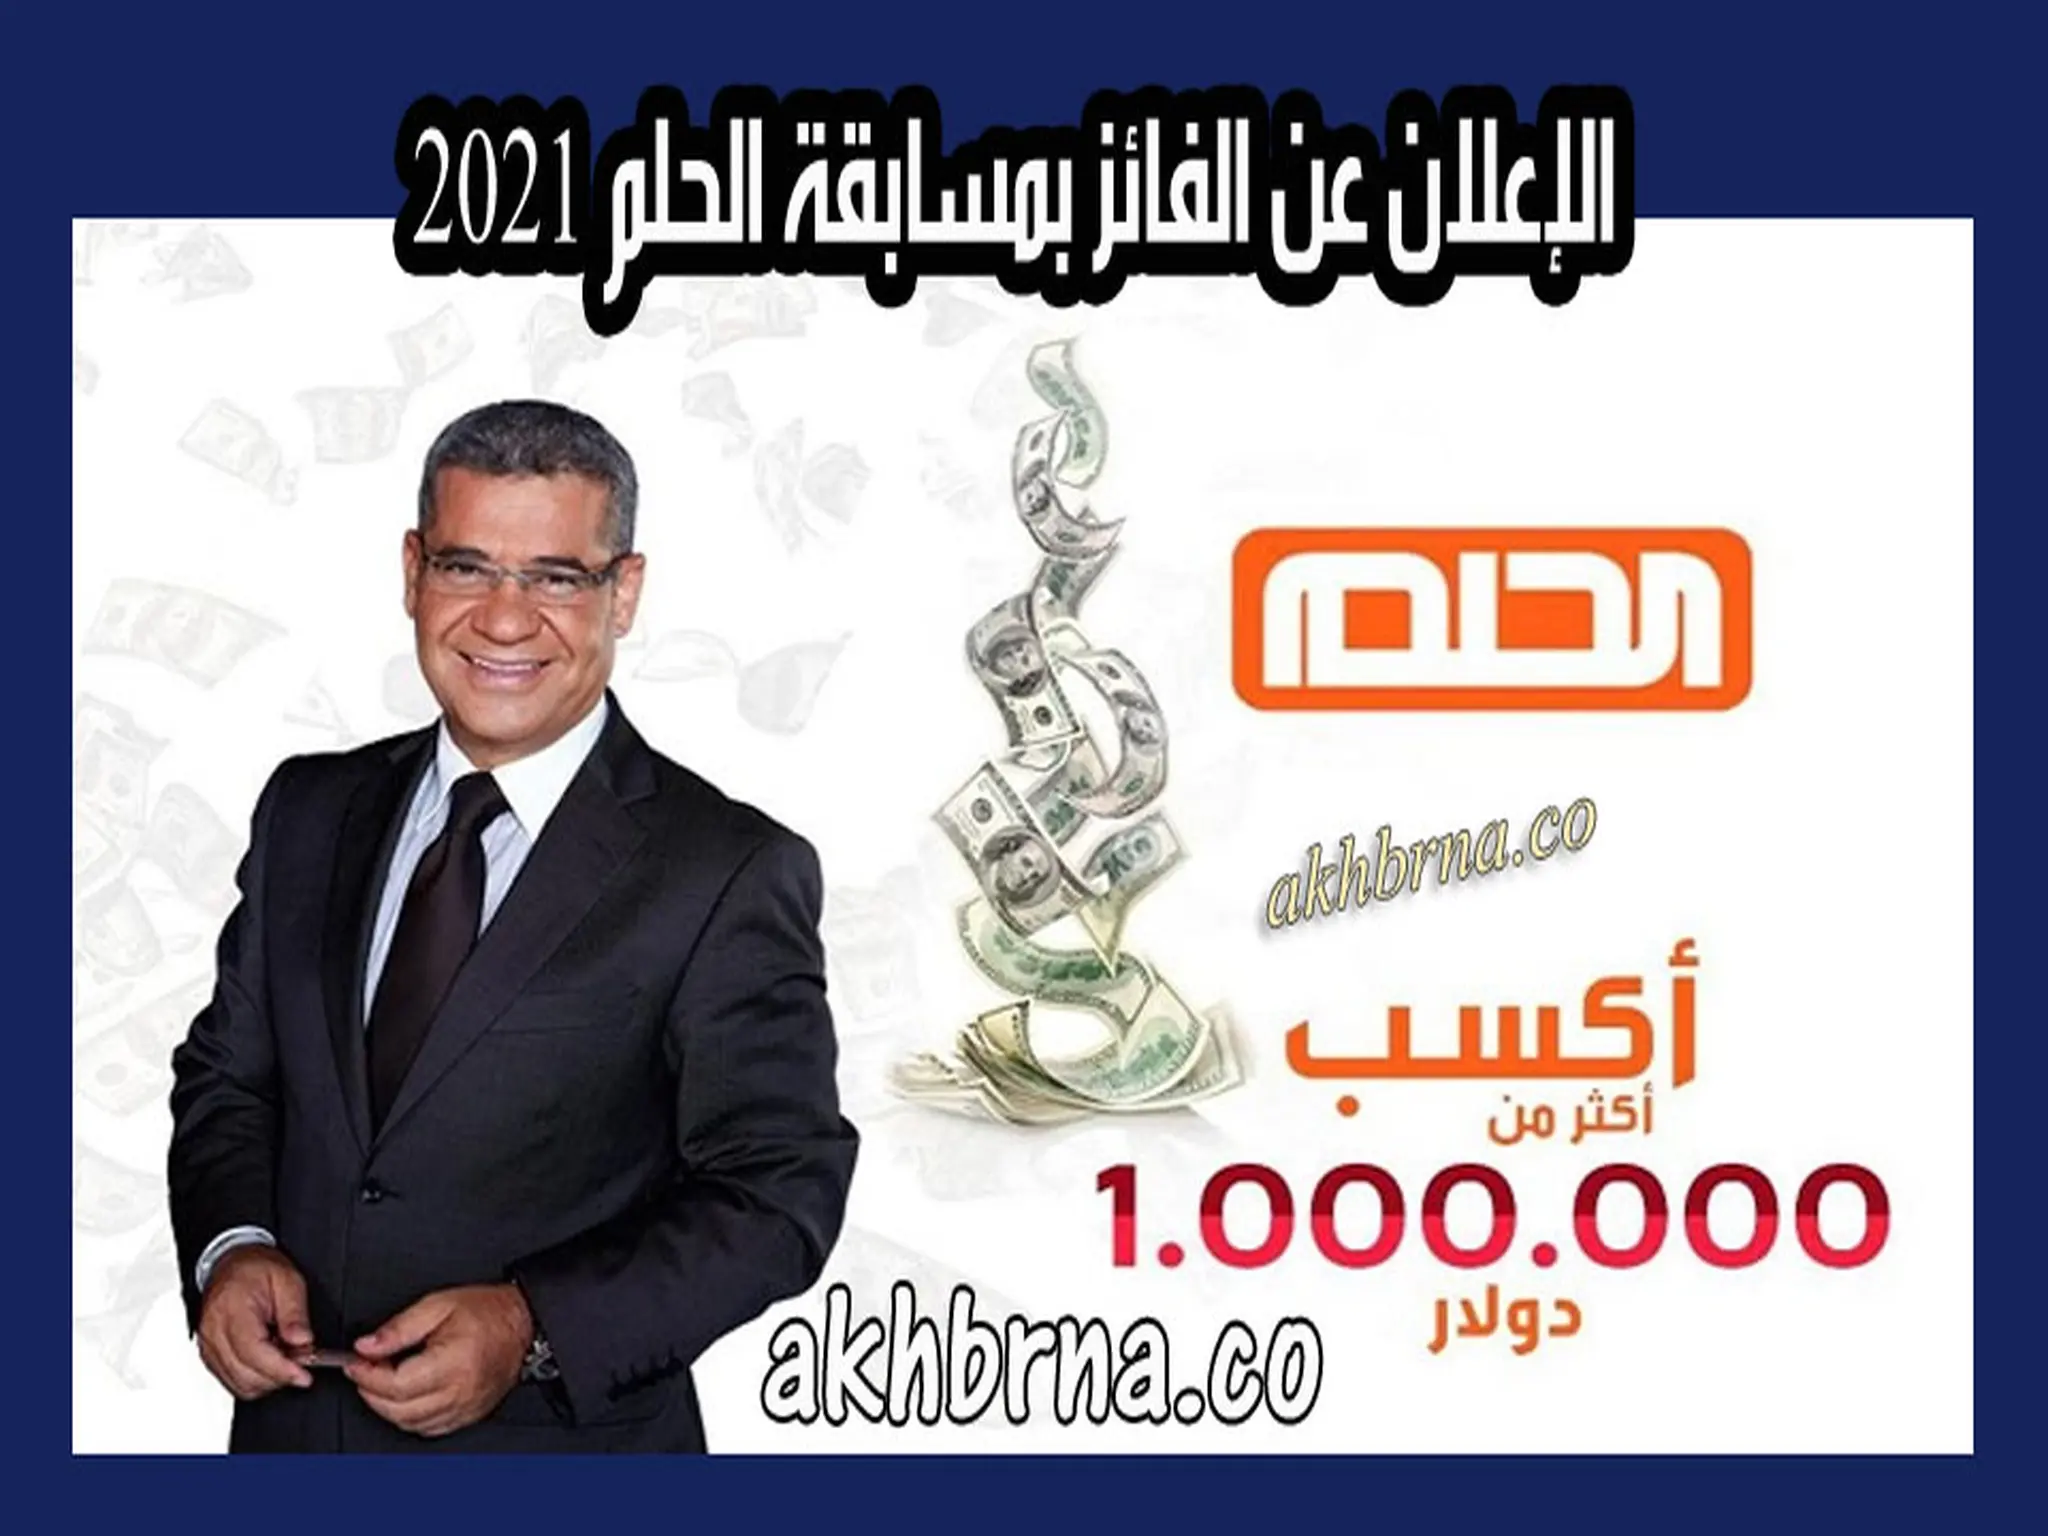 مسابقة الحلم 2021 .. الإعلان عن اسم الفائز بجائزة مليون دولار قناة mbc مع مصطفى الآغا